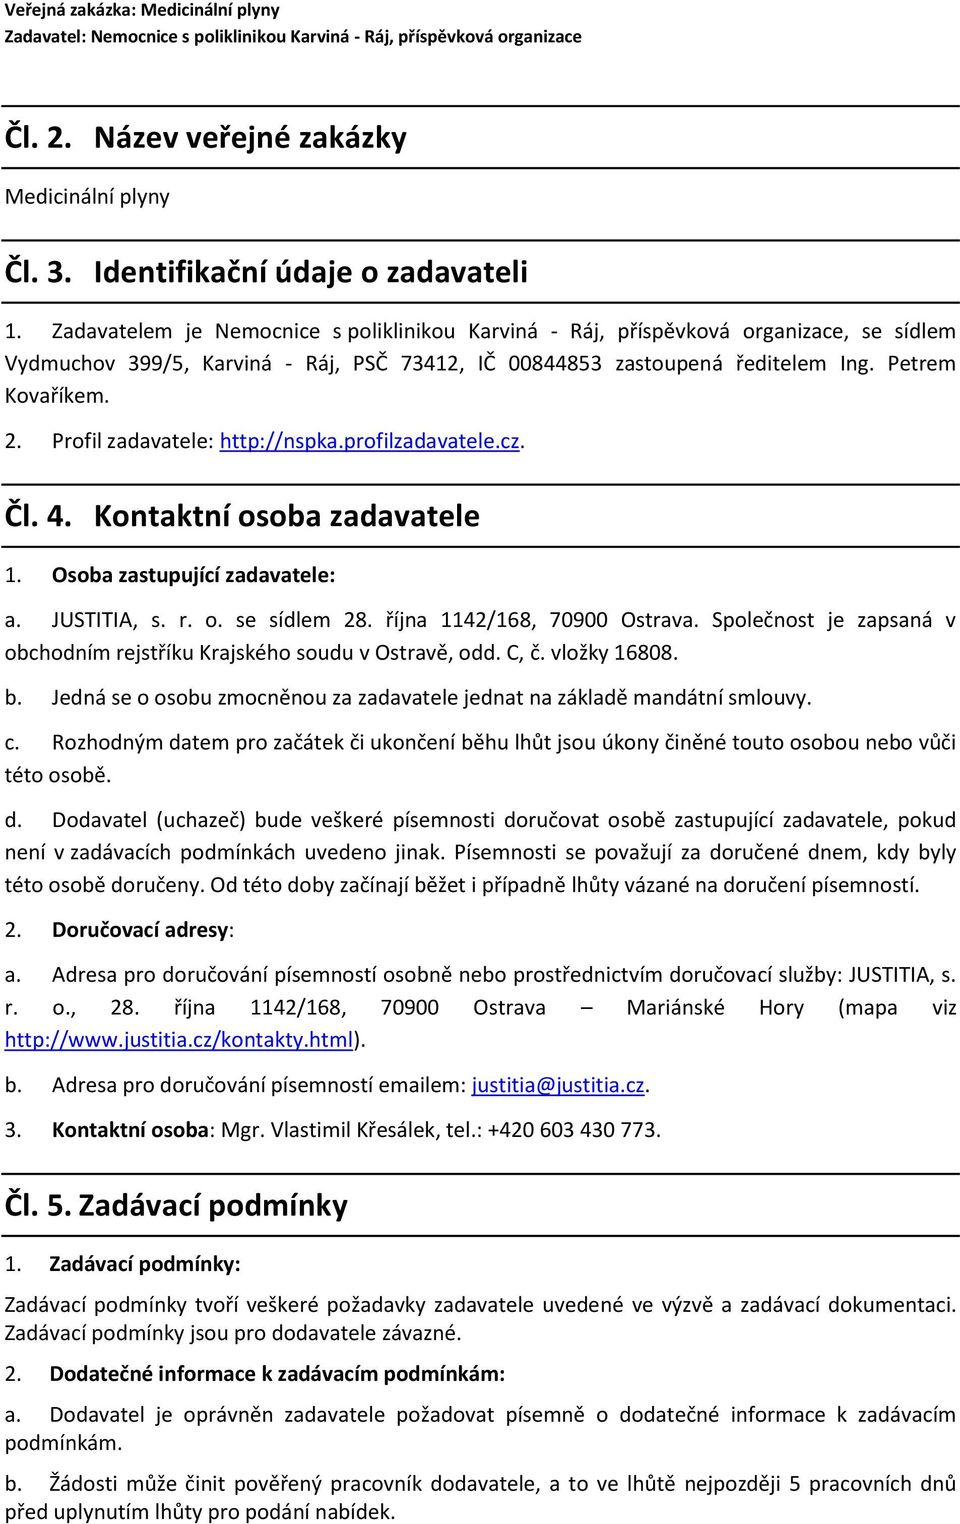 Profil zadavatele: http://nspka.profilzadavatele.cz. Čl. 4. Kontaktní osoba zadavatele 1. Osoba zastupující zadavatele: a. JUSTITIA, s. r. o. se sídlem 28. října 1142/168, 70900 Ostrava.